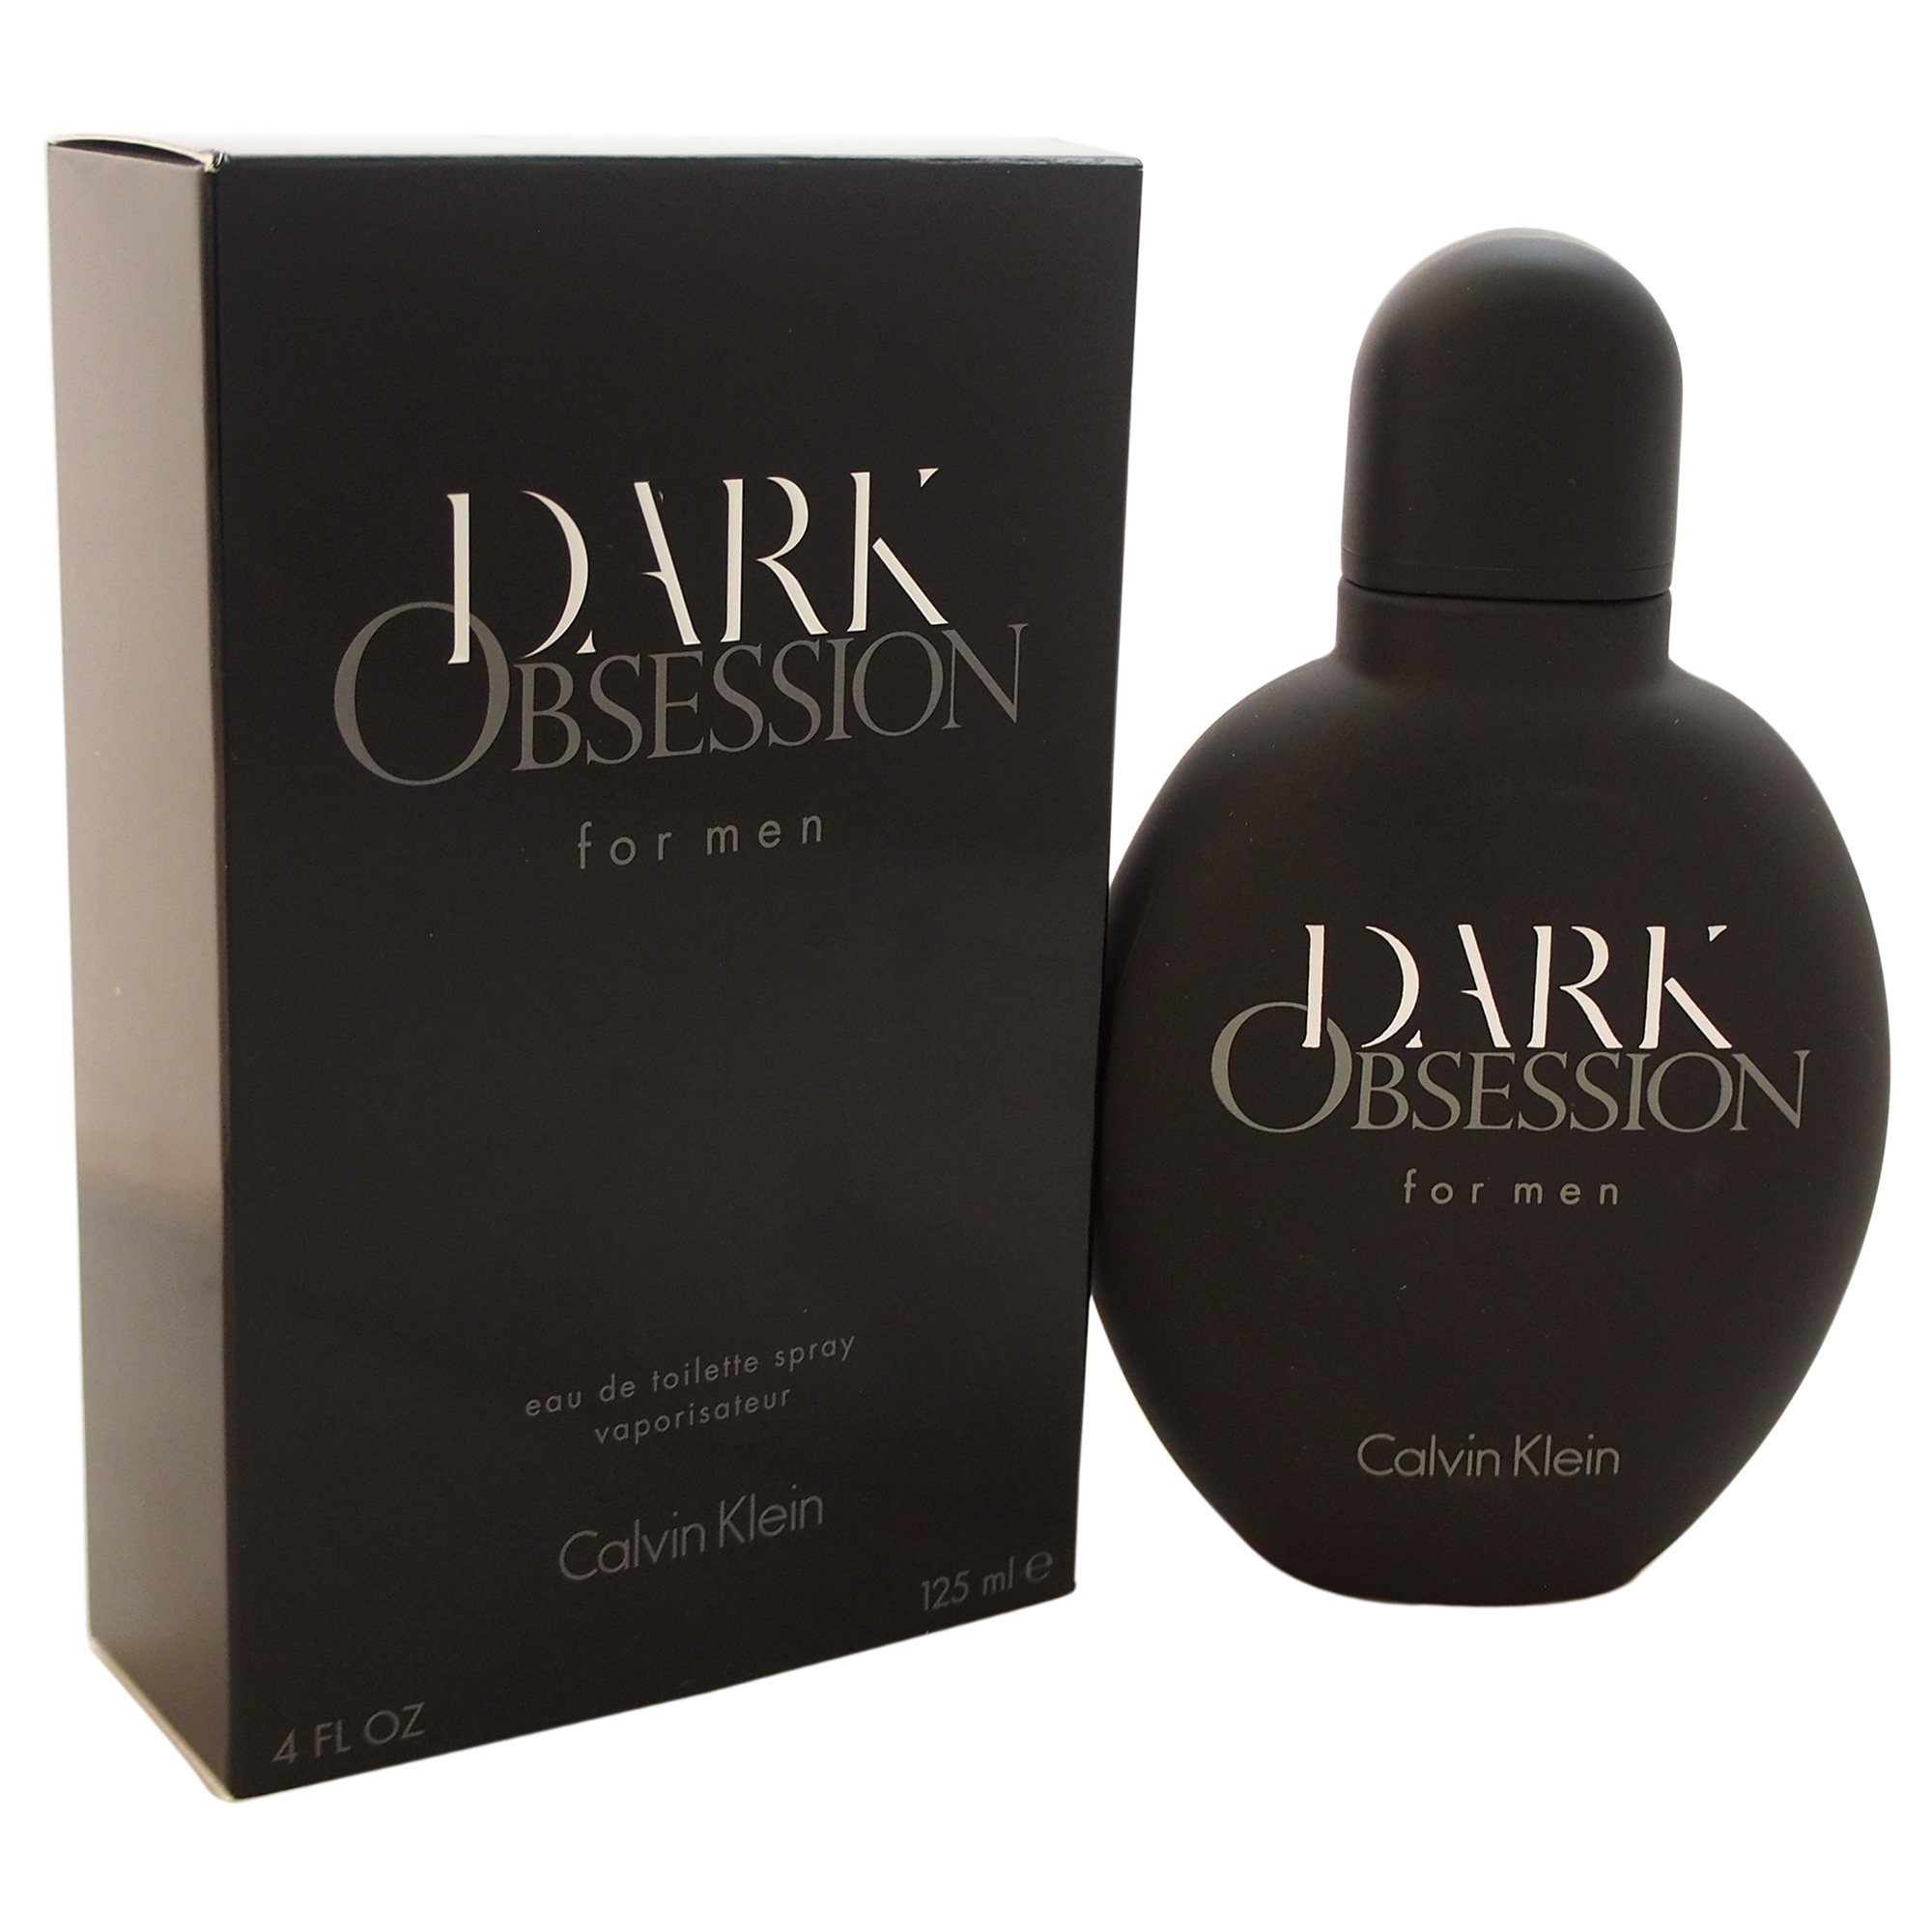 Dark Obsession by Calvin Klein for Men - 4 oz EDT Spray